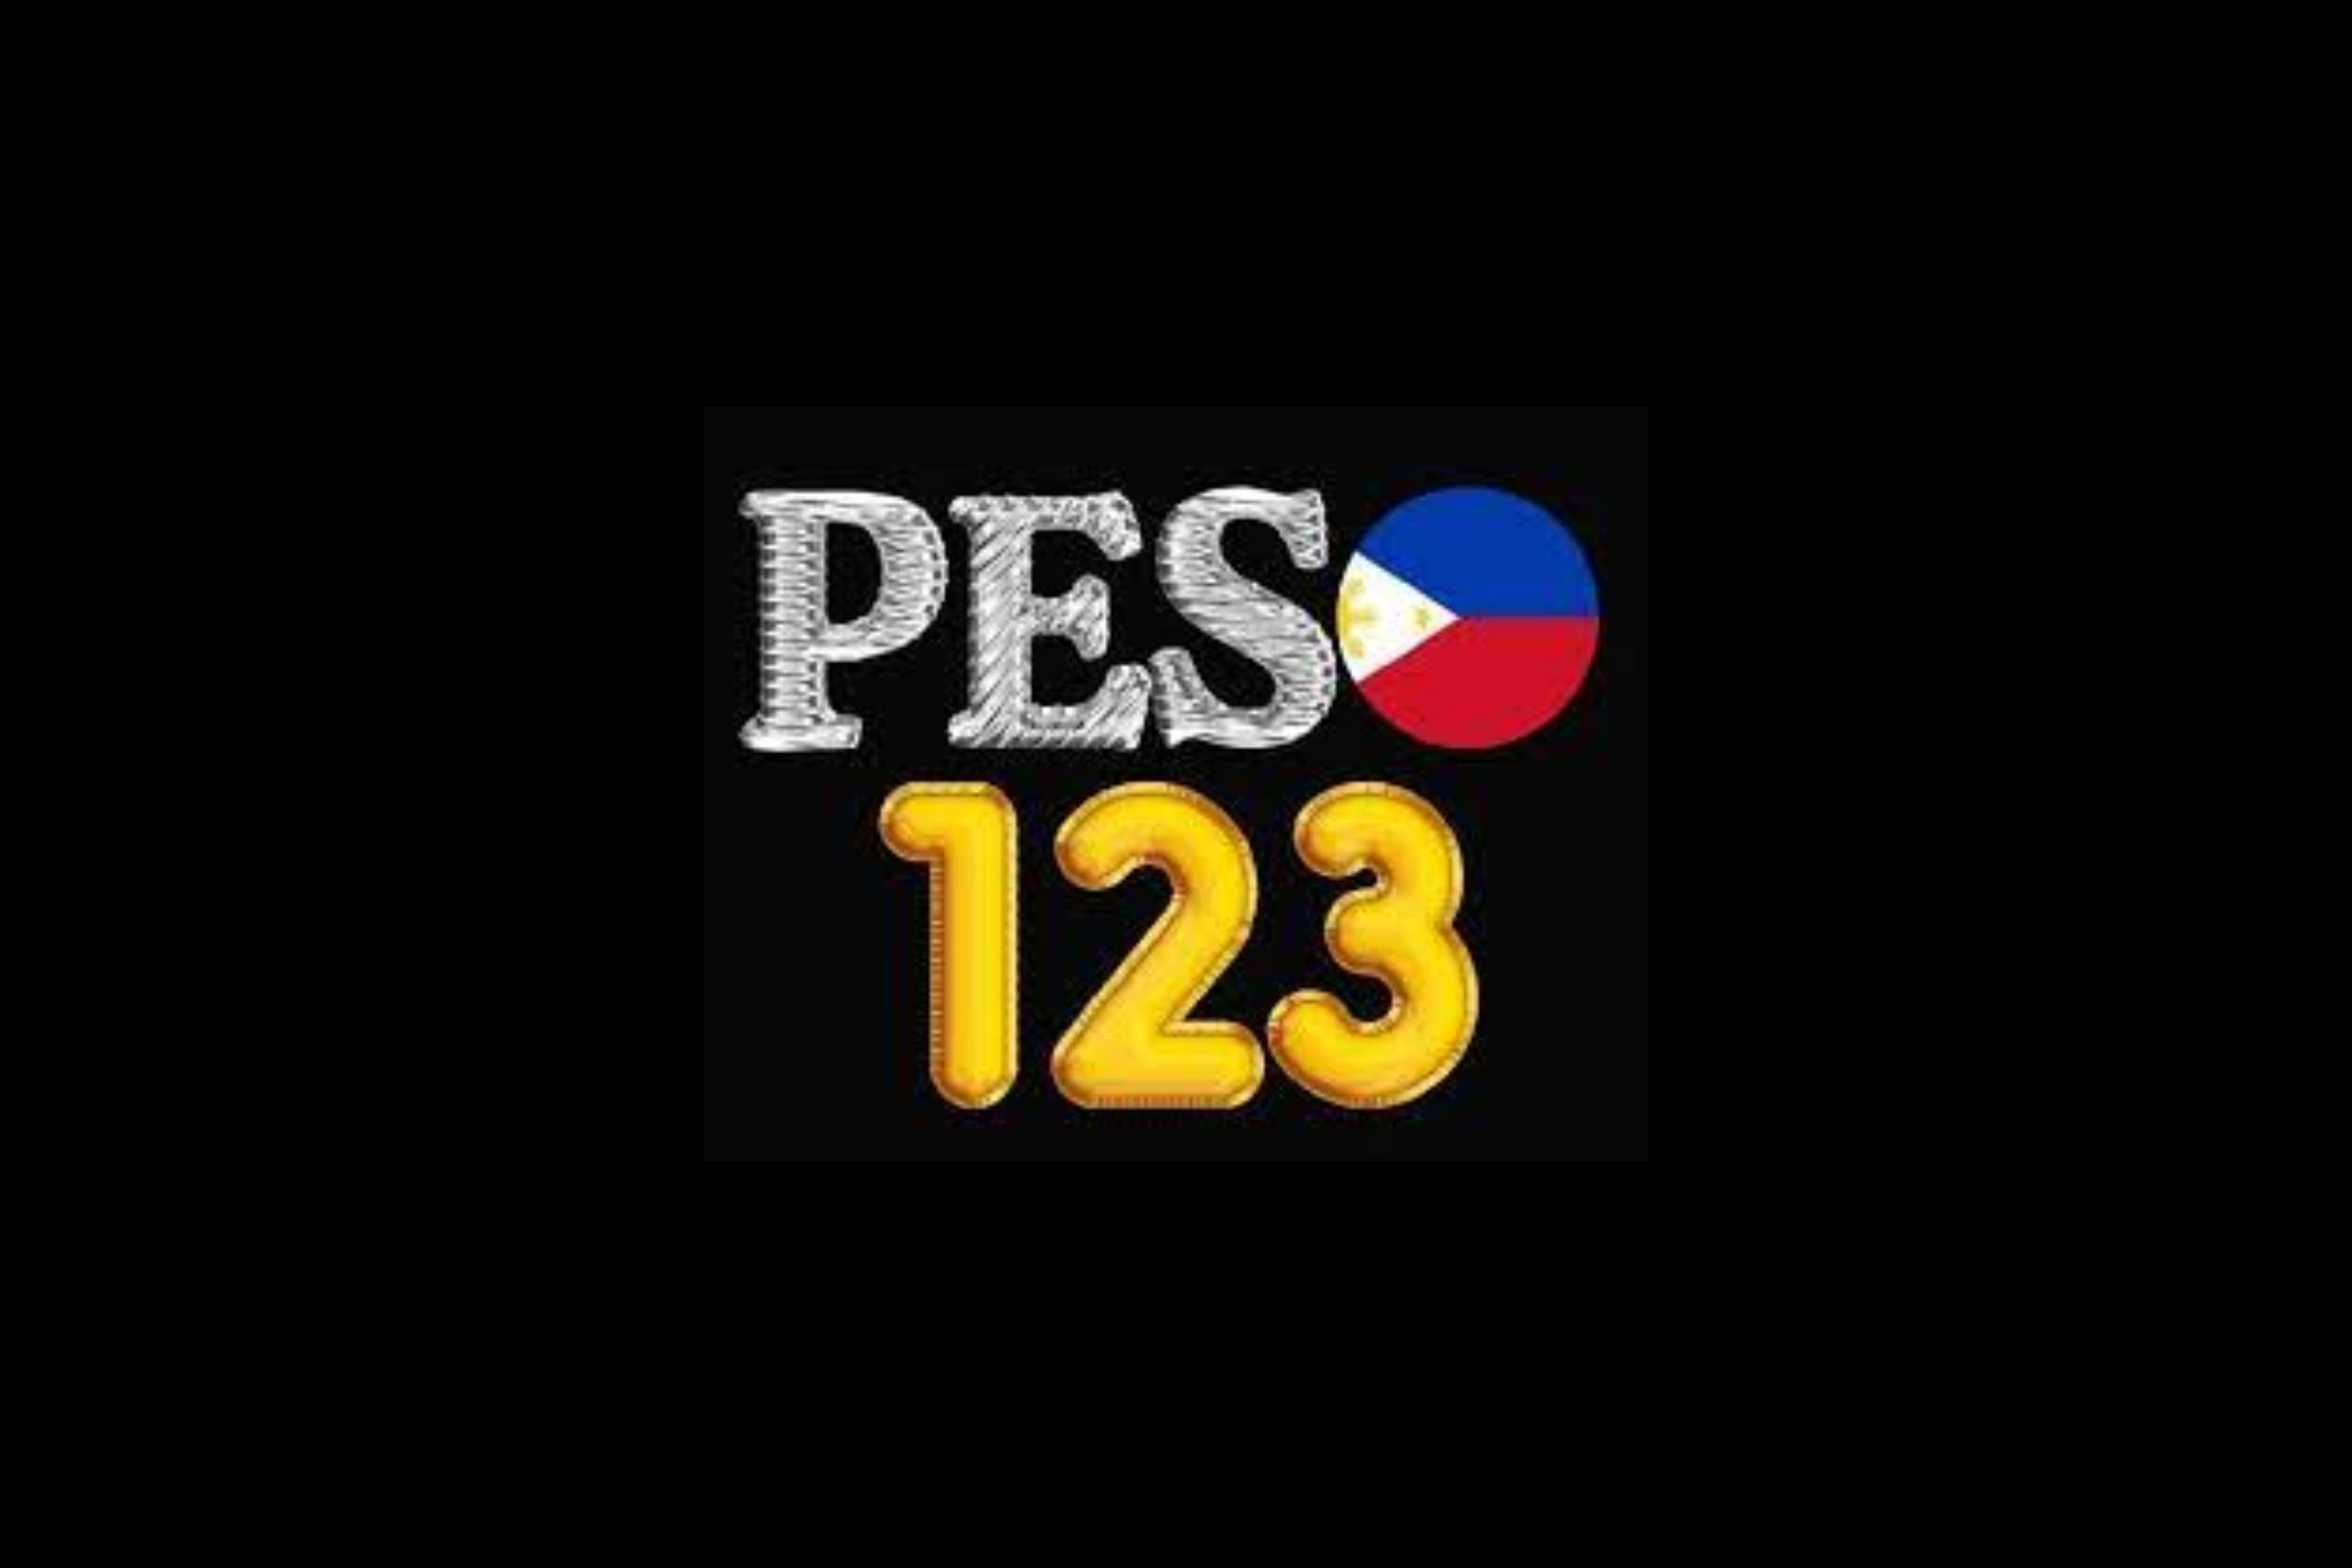 peso123